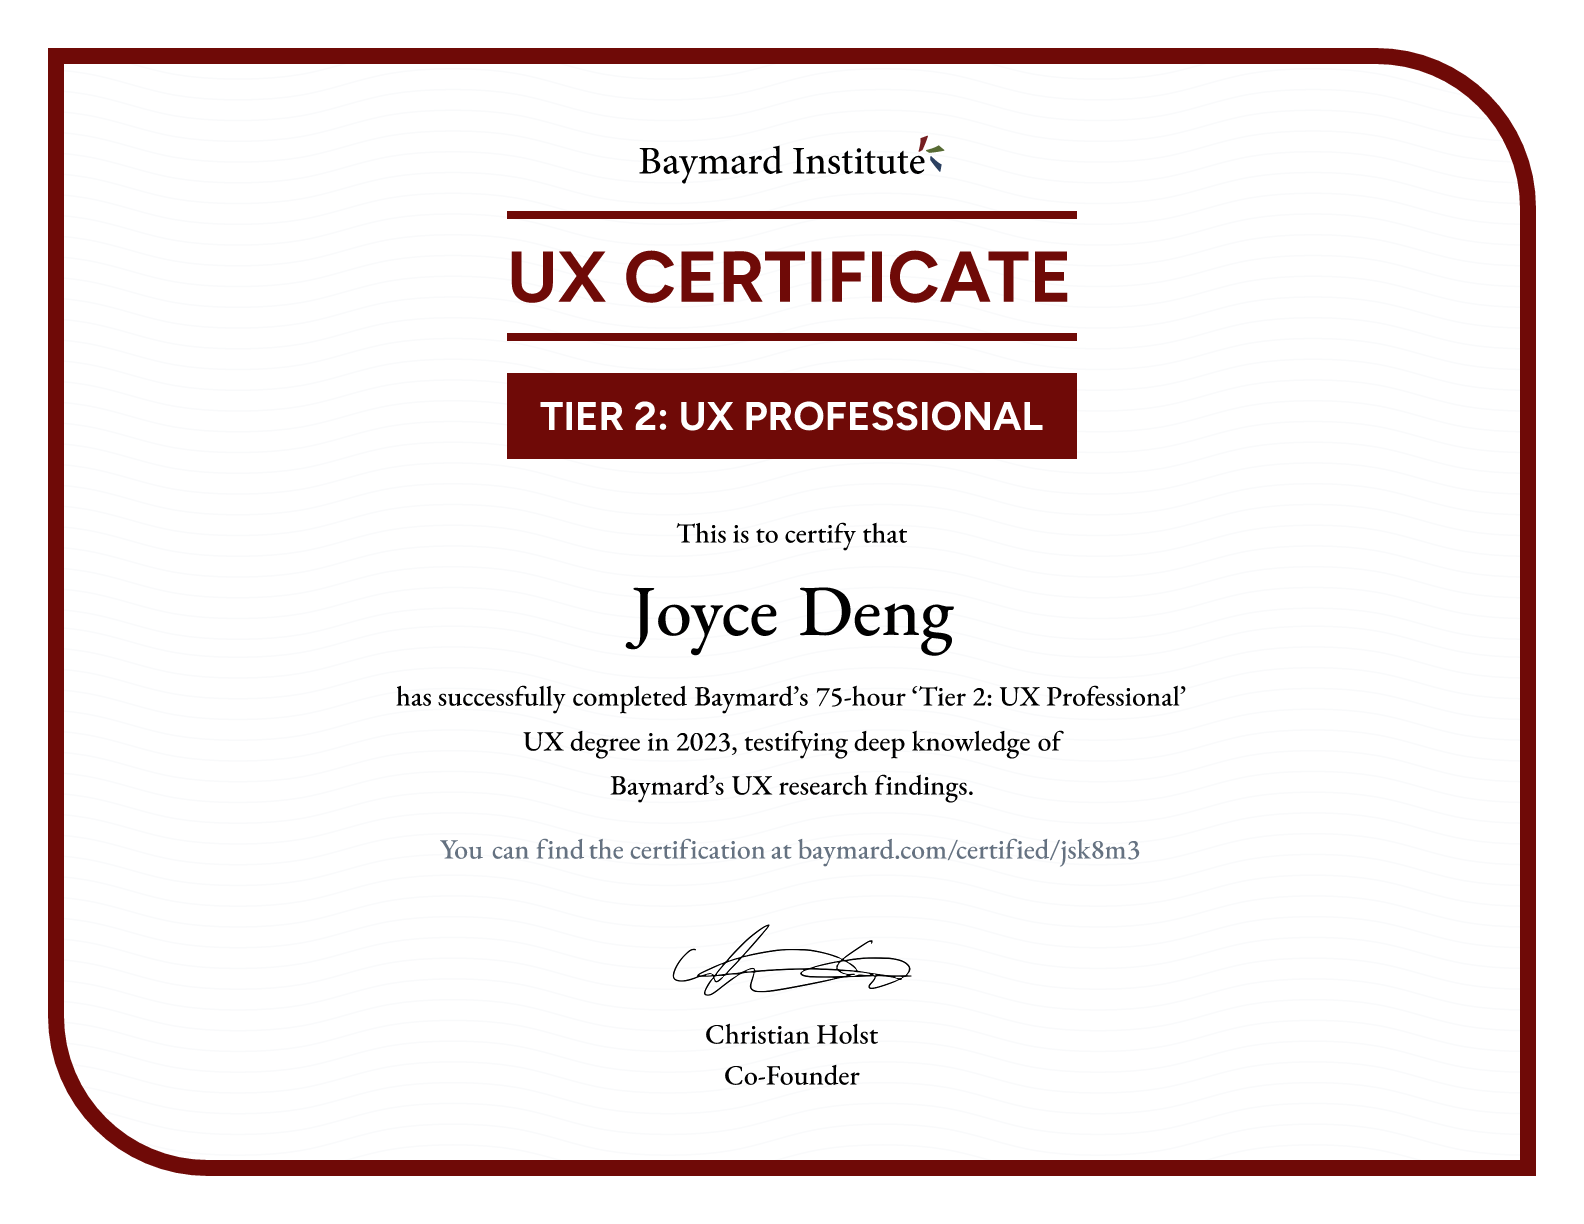 Joyce Deng’s certificate